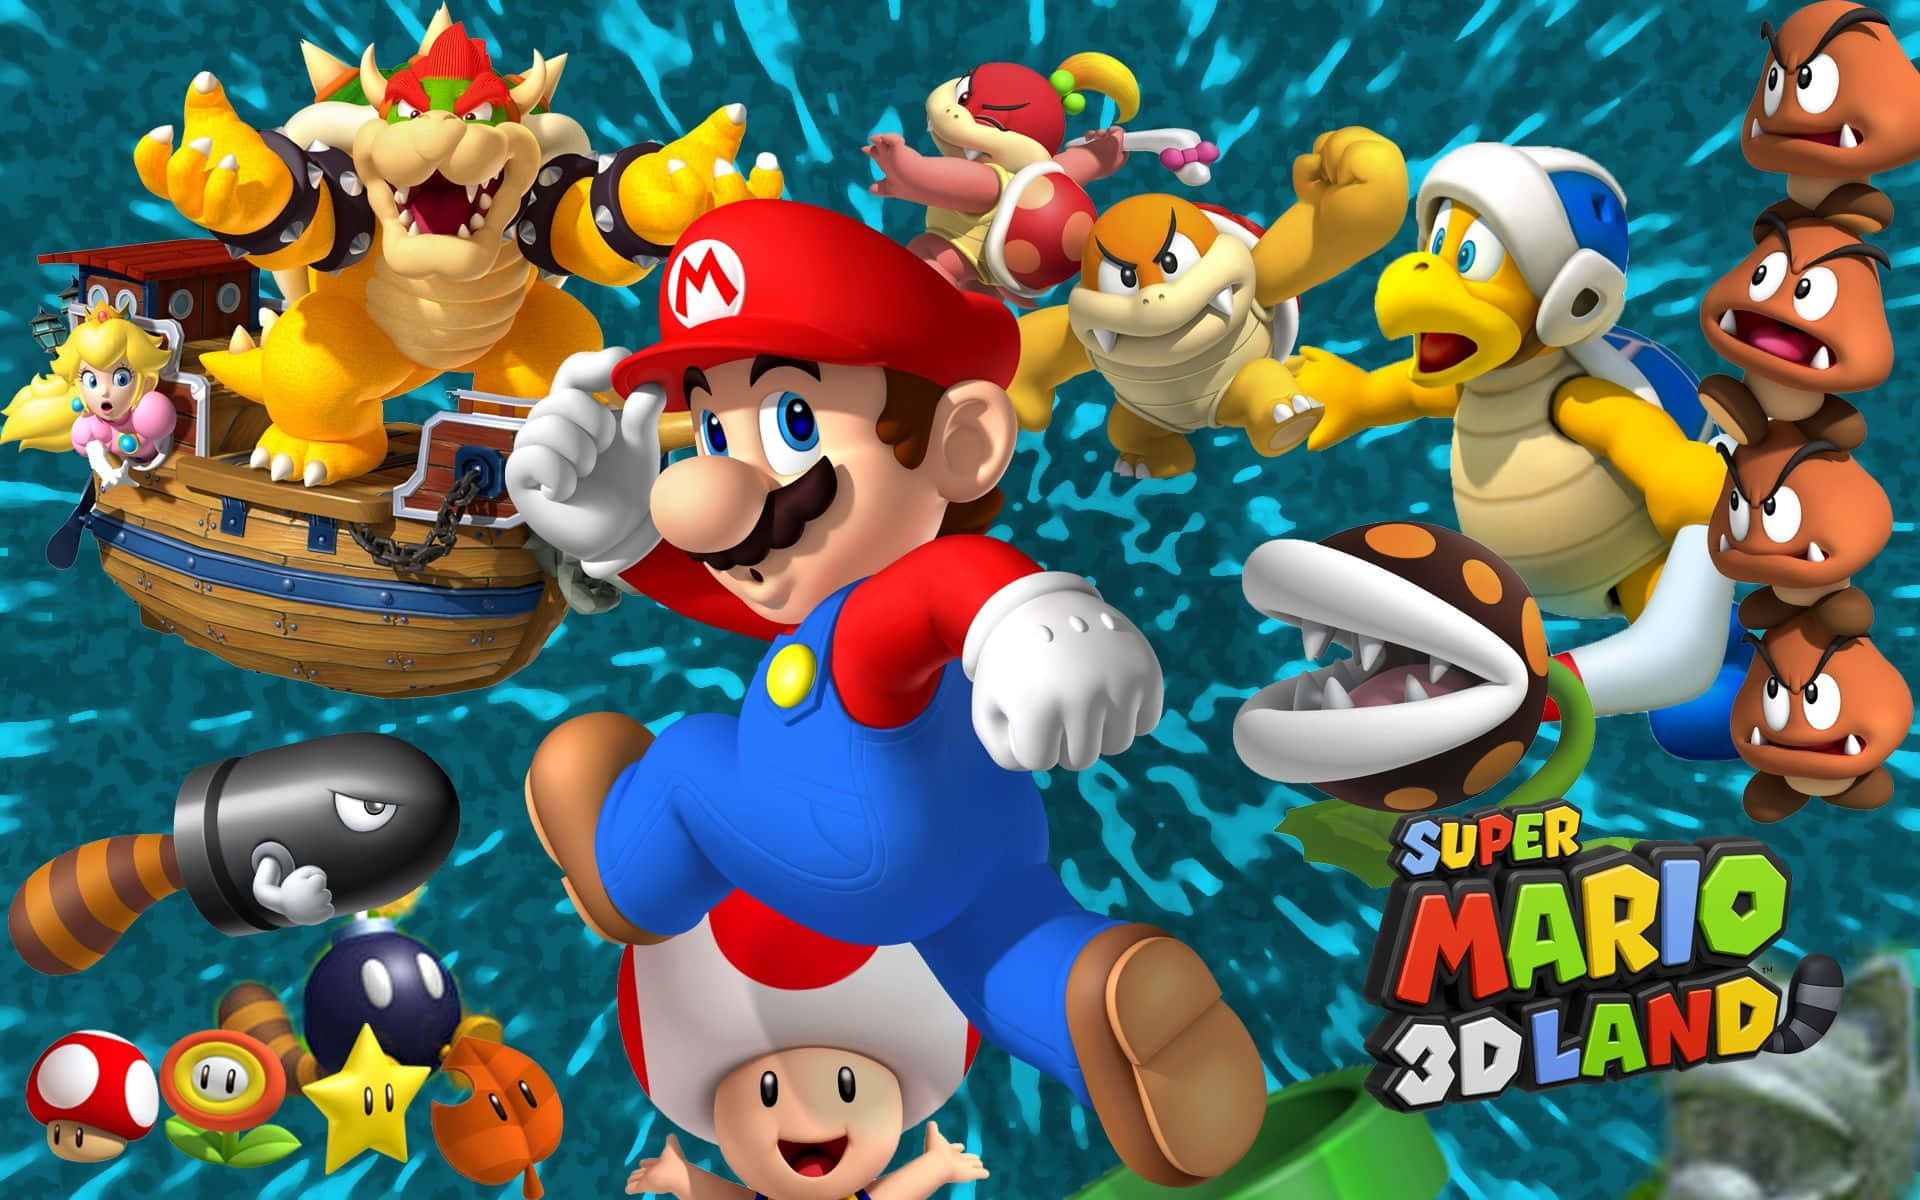 Supermario 3d Land: Super Mario 3d Land